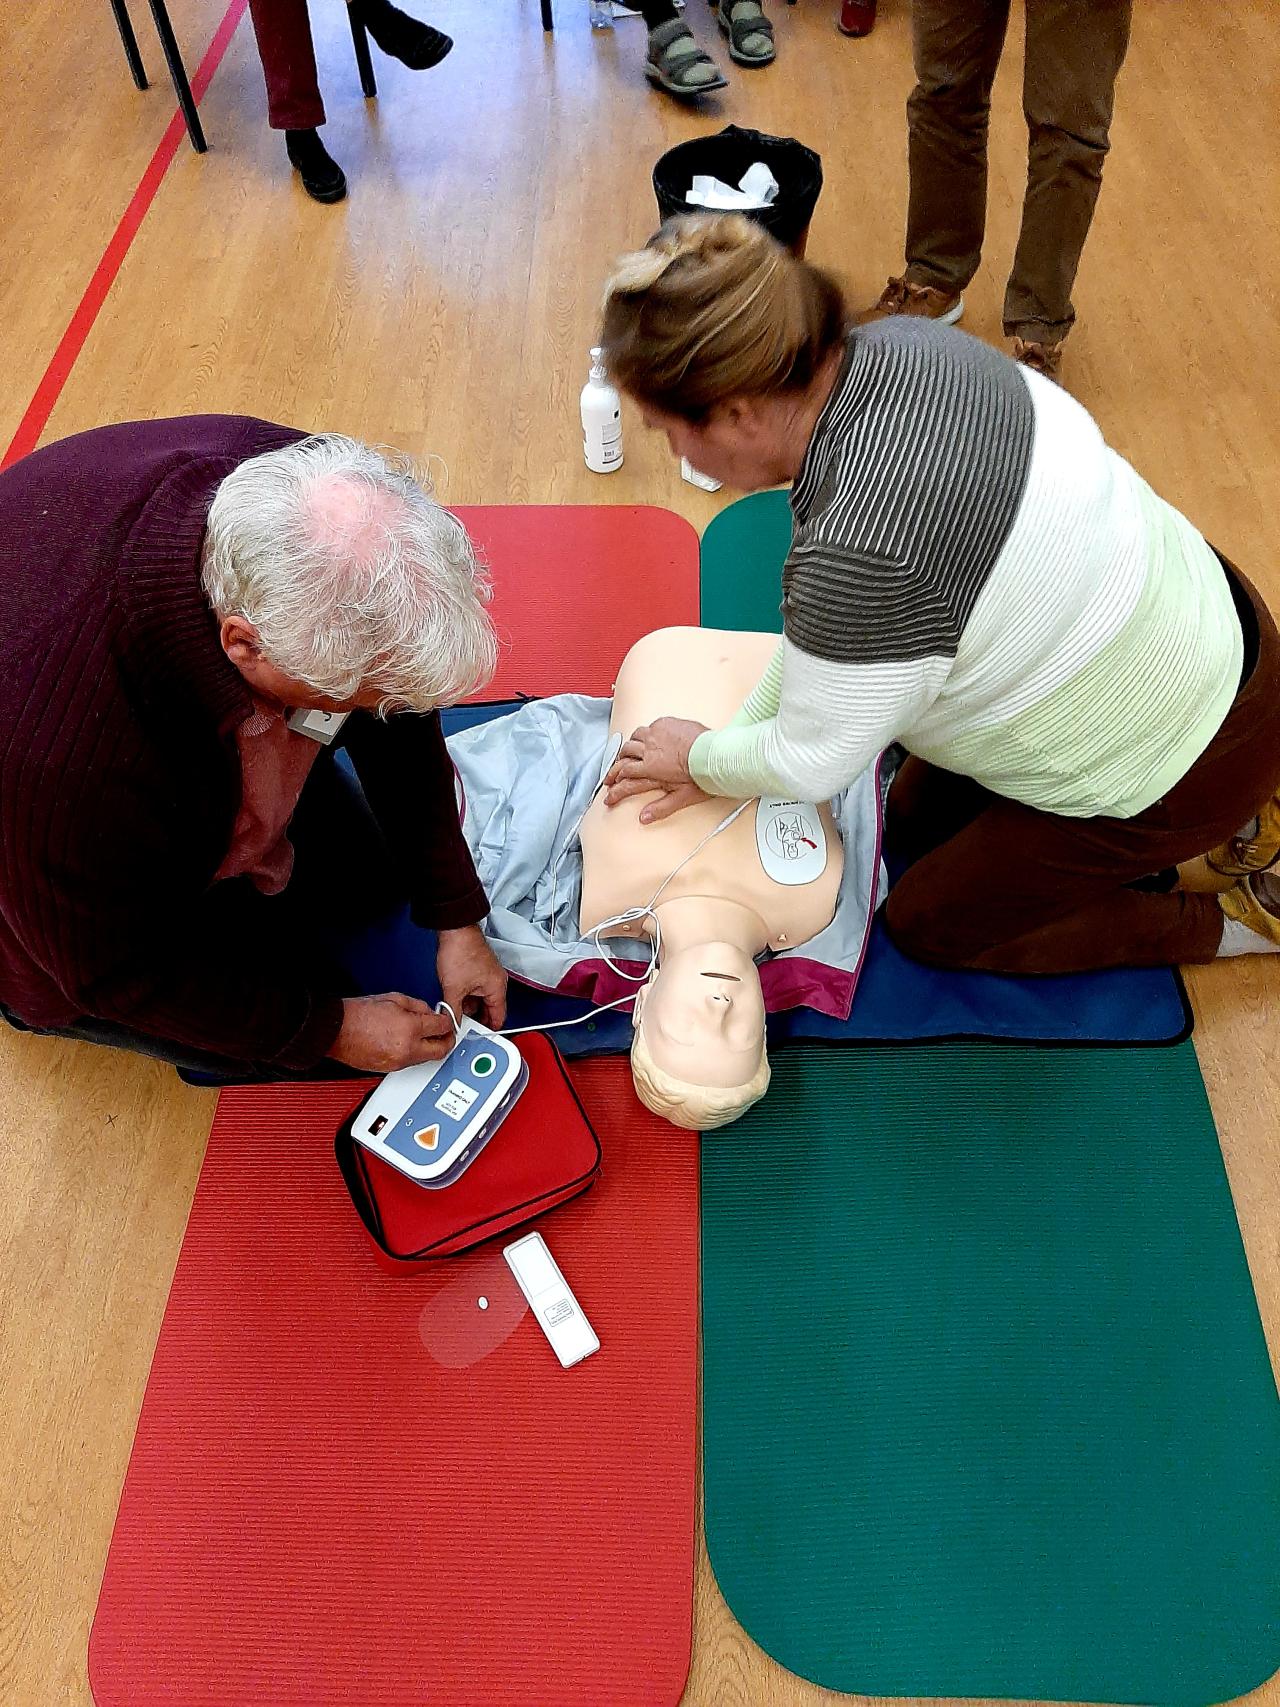 Kurssilaiset harjoittelevat painelu-puhalluselvytystä defibrillaattorin avulla.